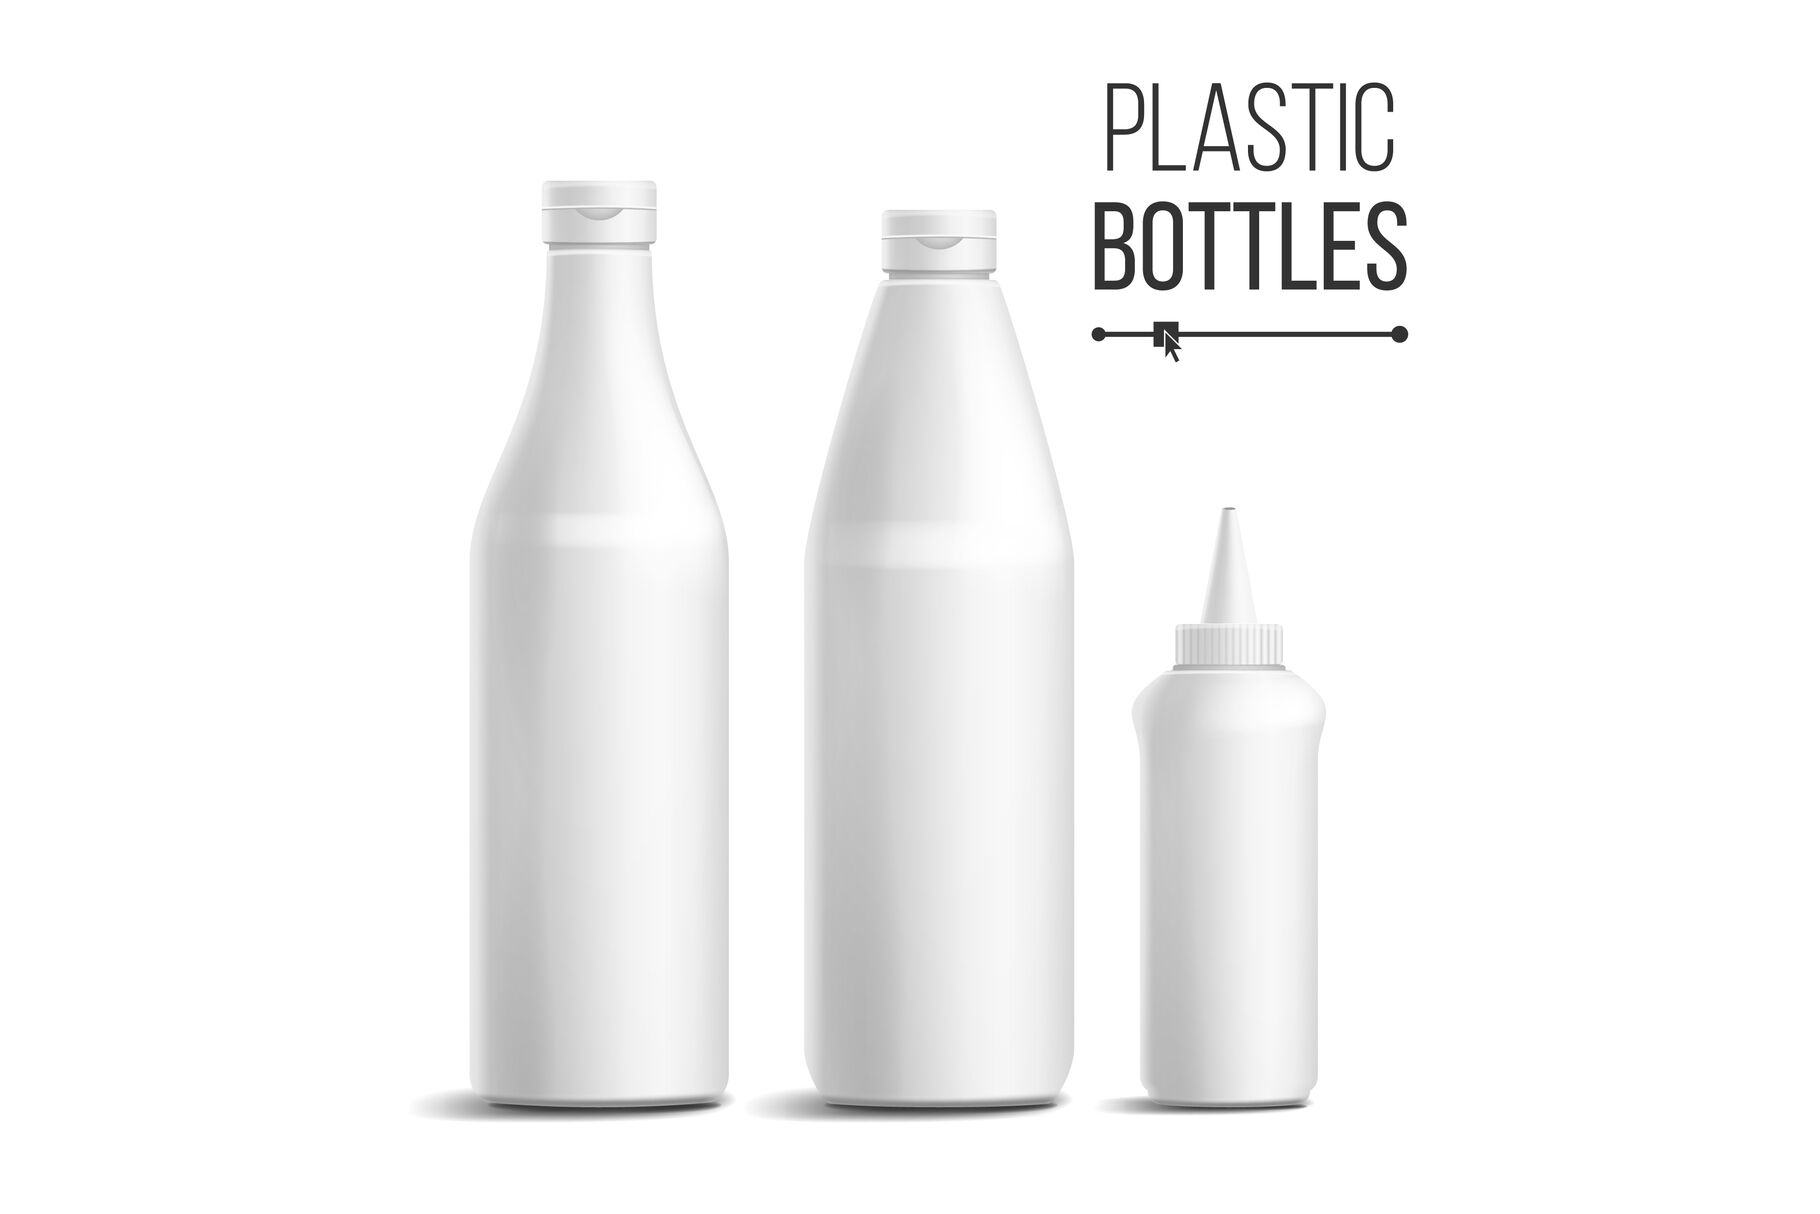 https://media1.thehungryjpeg.com/thumbs2/ori_3744103_duihsunbbusx3bq0avd1aaukcjy2u6u9ke40067w_white-bottle-set-vector-3d-realistic-blank-plastic-white-clean-tomato-sauce-mayonnaise-bottles-mock-up-good-for-branding-design-isolated-on-white-background-illustration.jpg